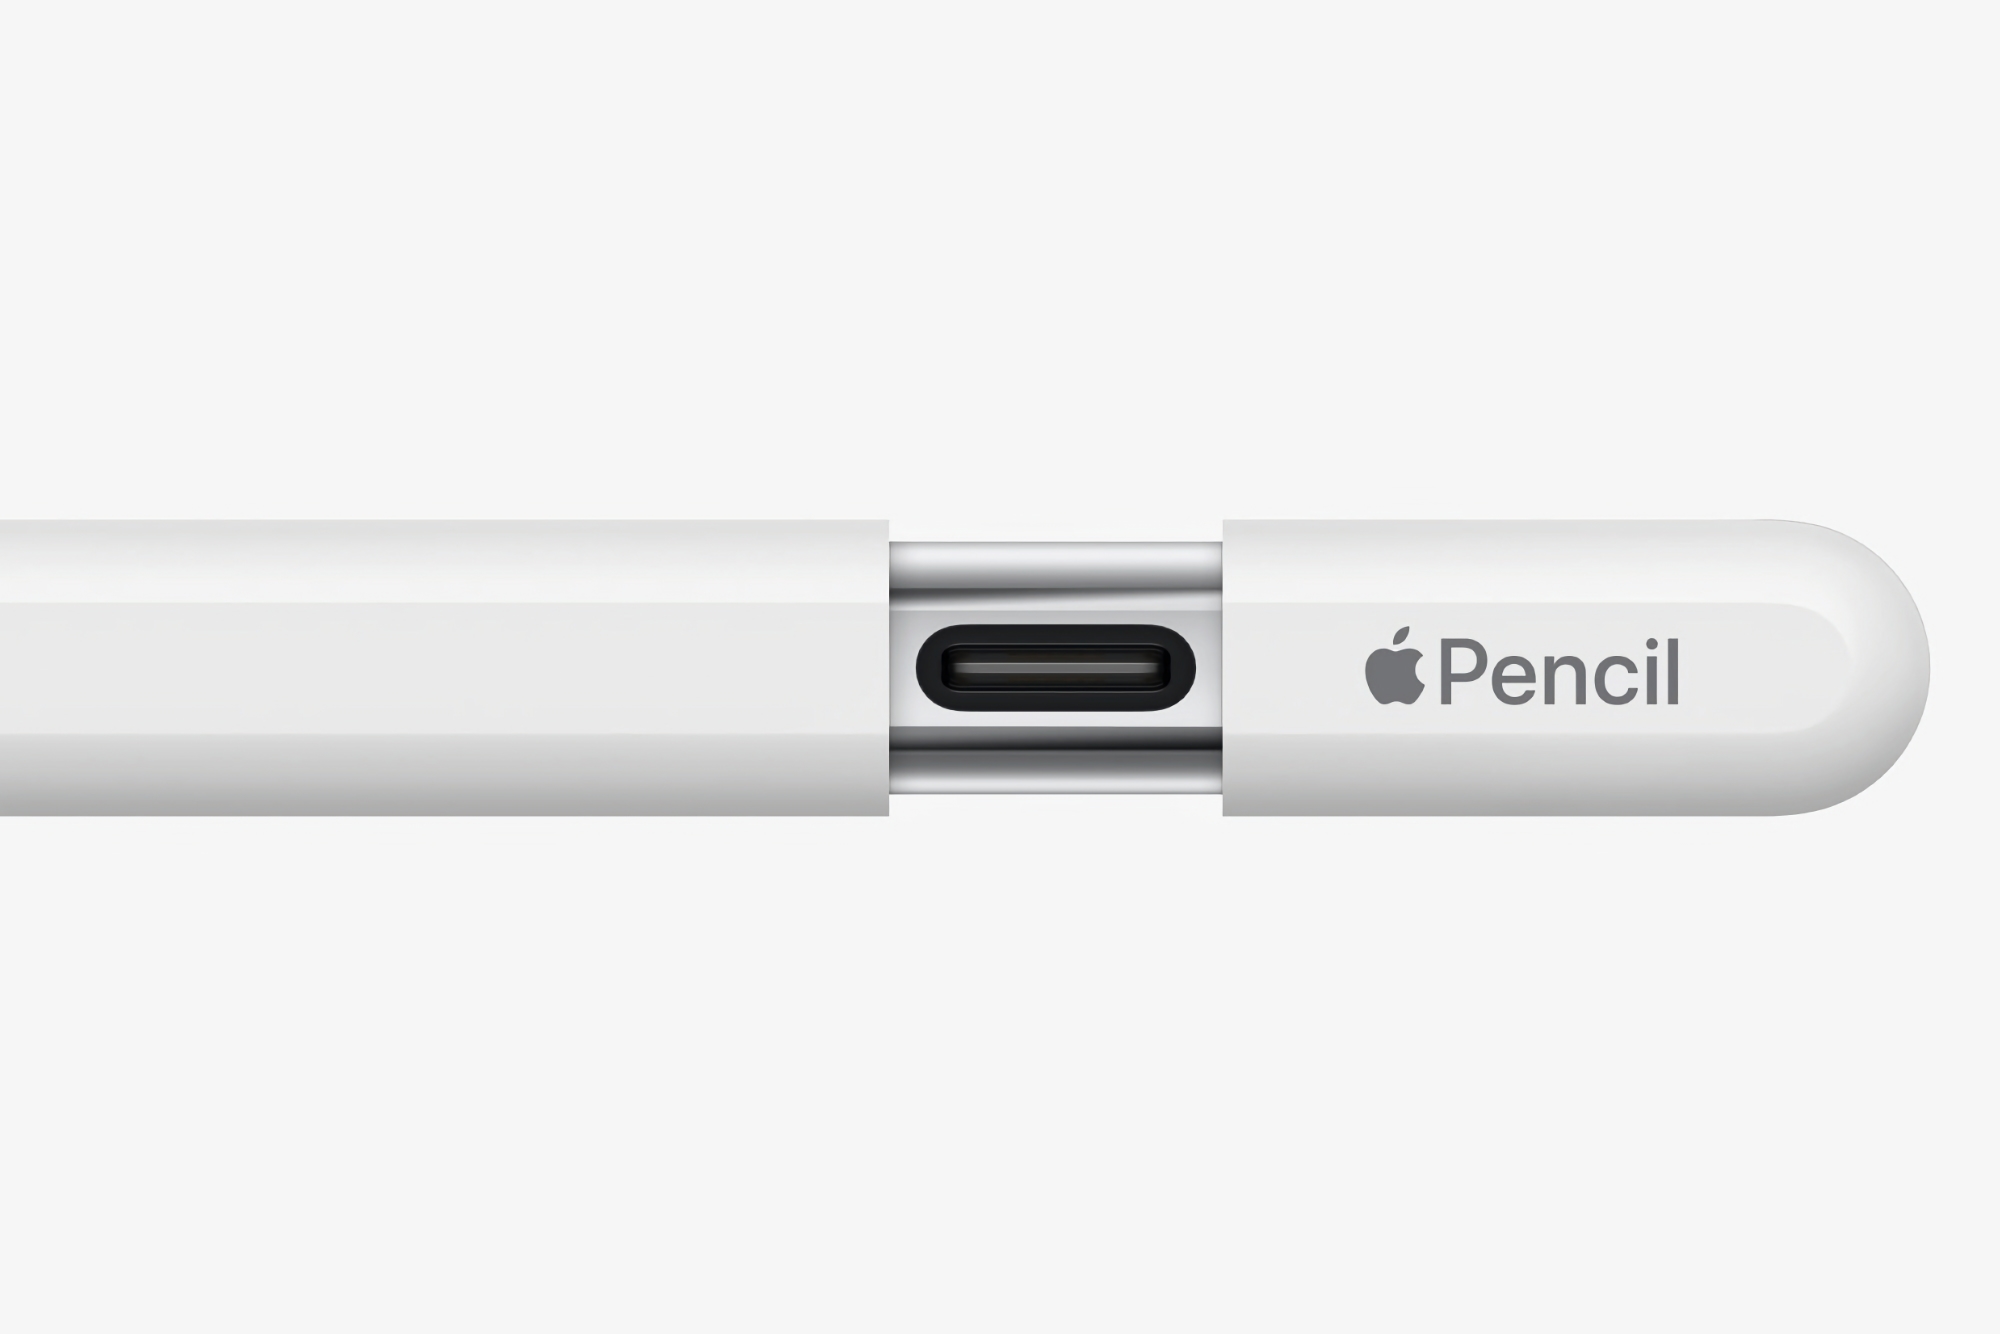 Apple ha lanzado un nuevo firmware para el Apple Pencil con USB-C